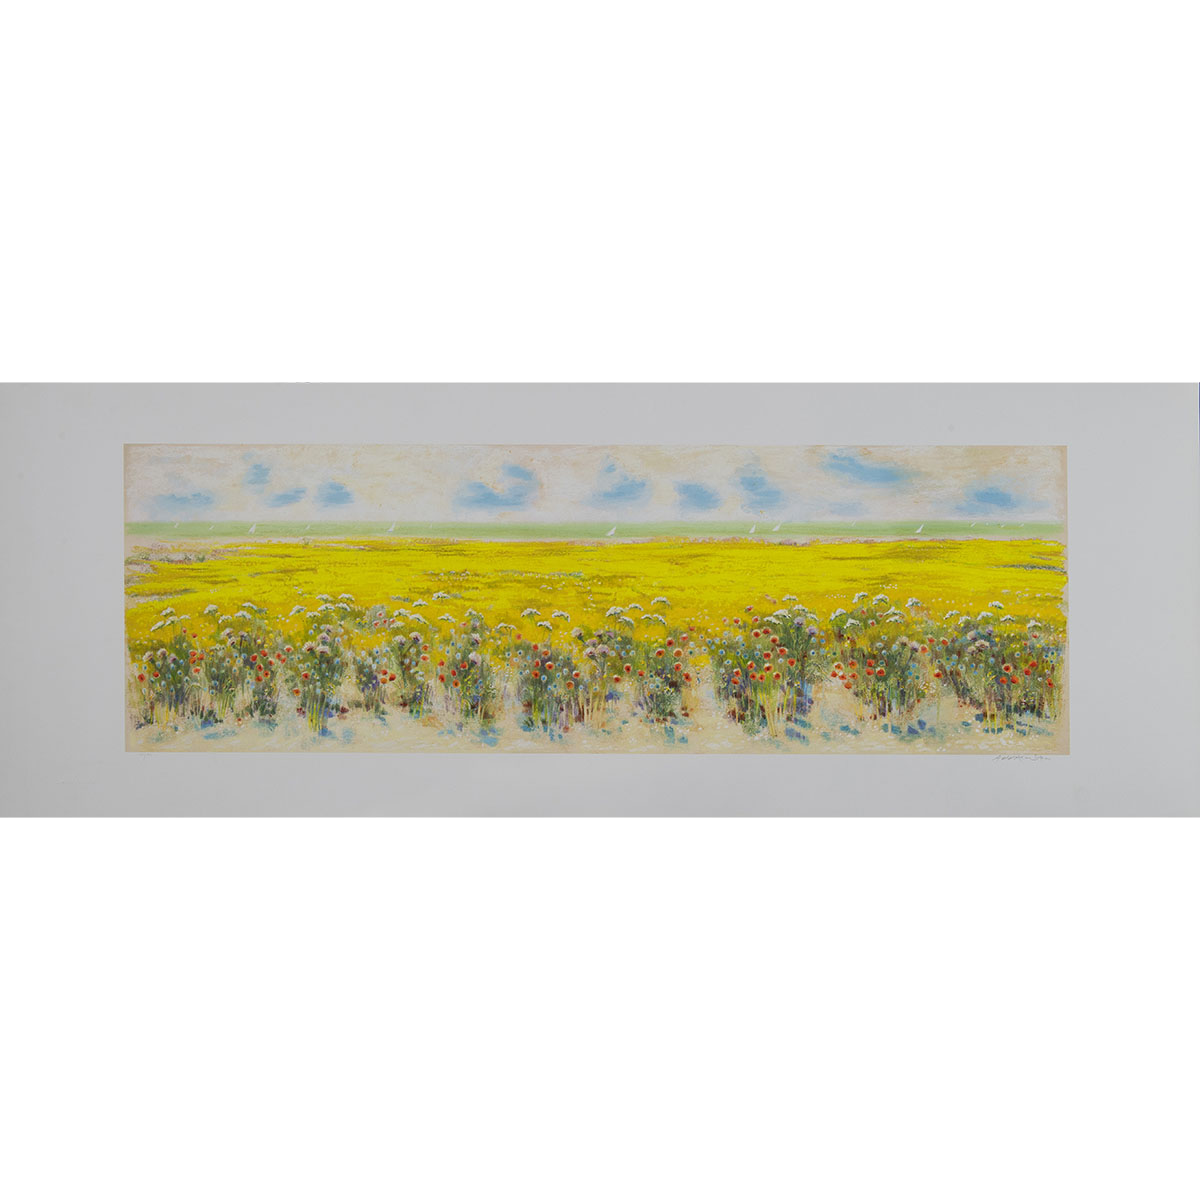 Natale Addamiano - Grande campo in fiori - Serigrafia 50x140